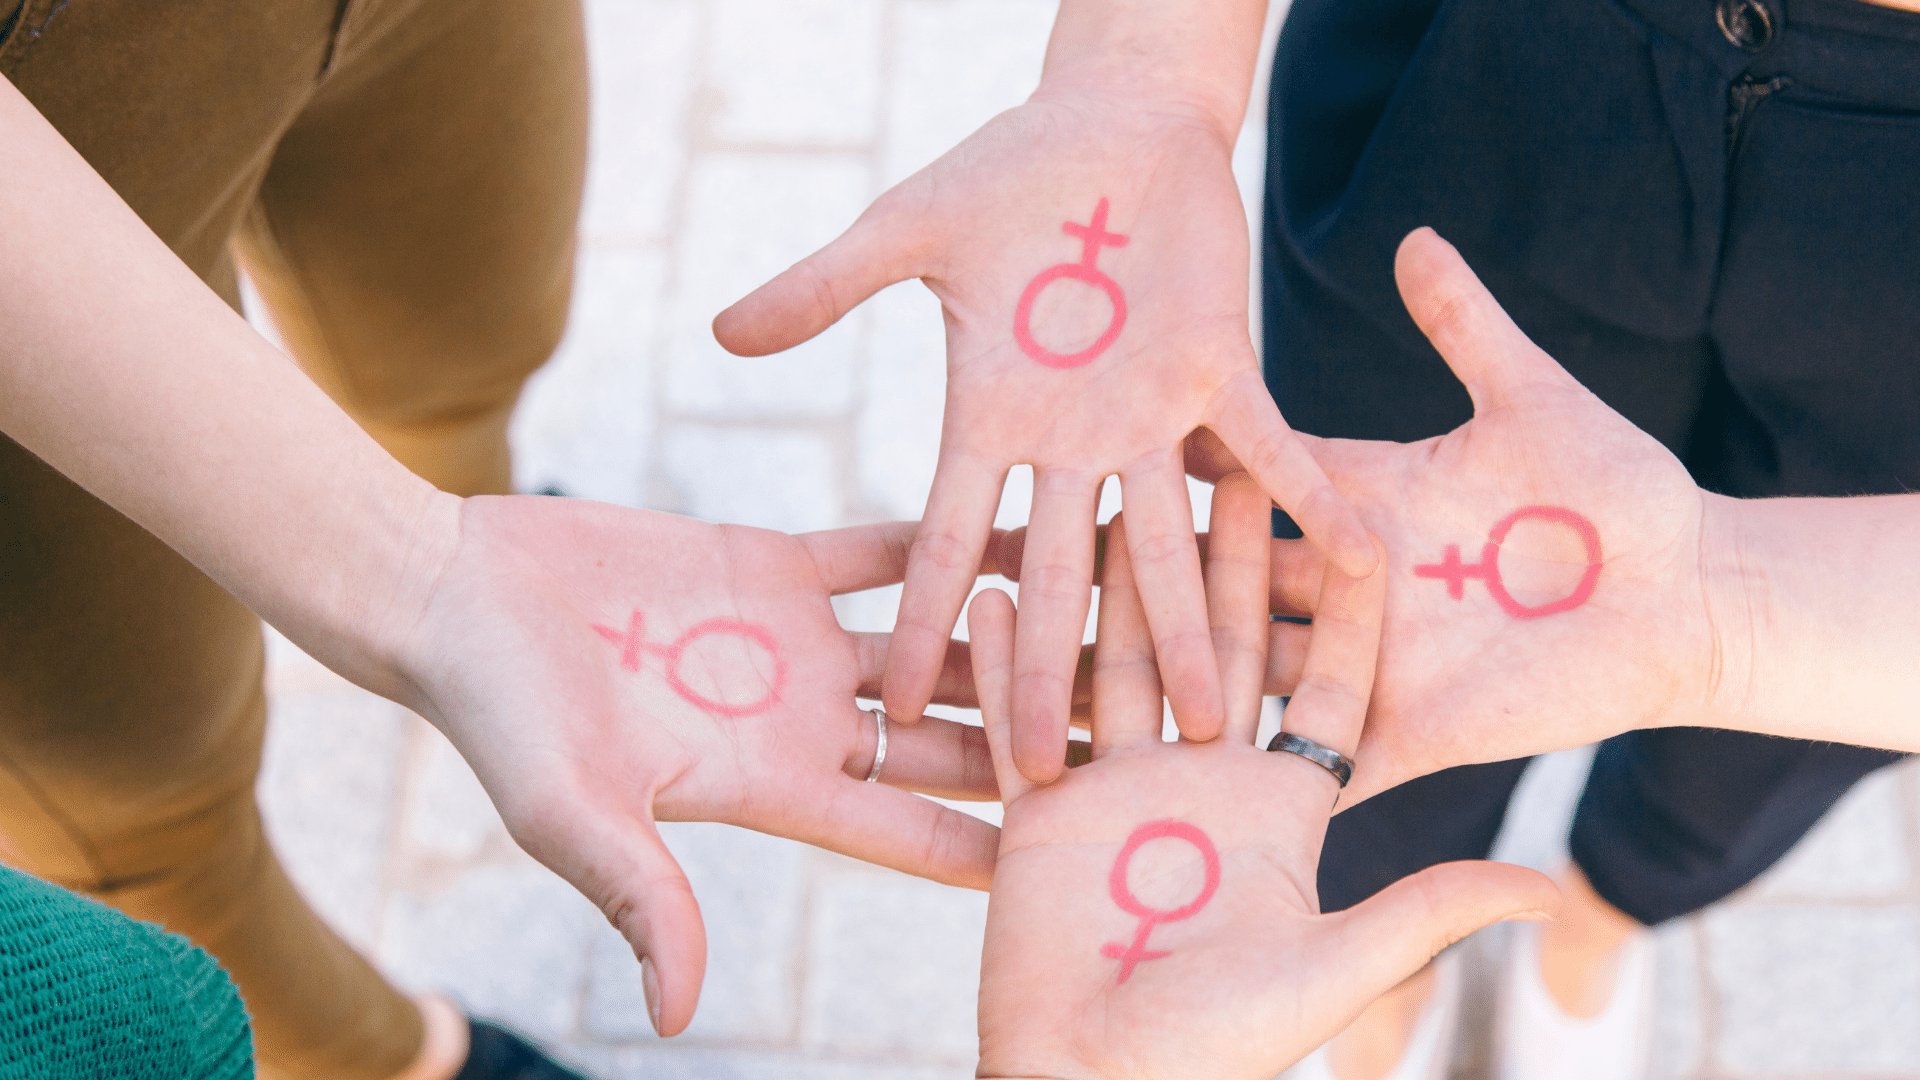 Quatro mãos voltadas para cima com o símbolo do feminismo desenhado nas palmas